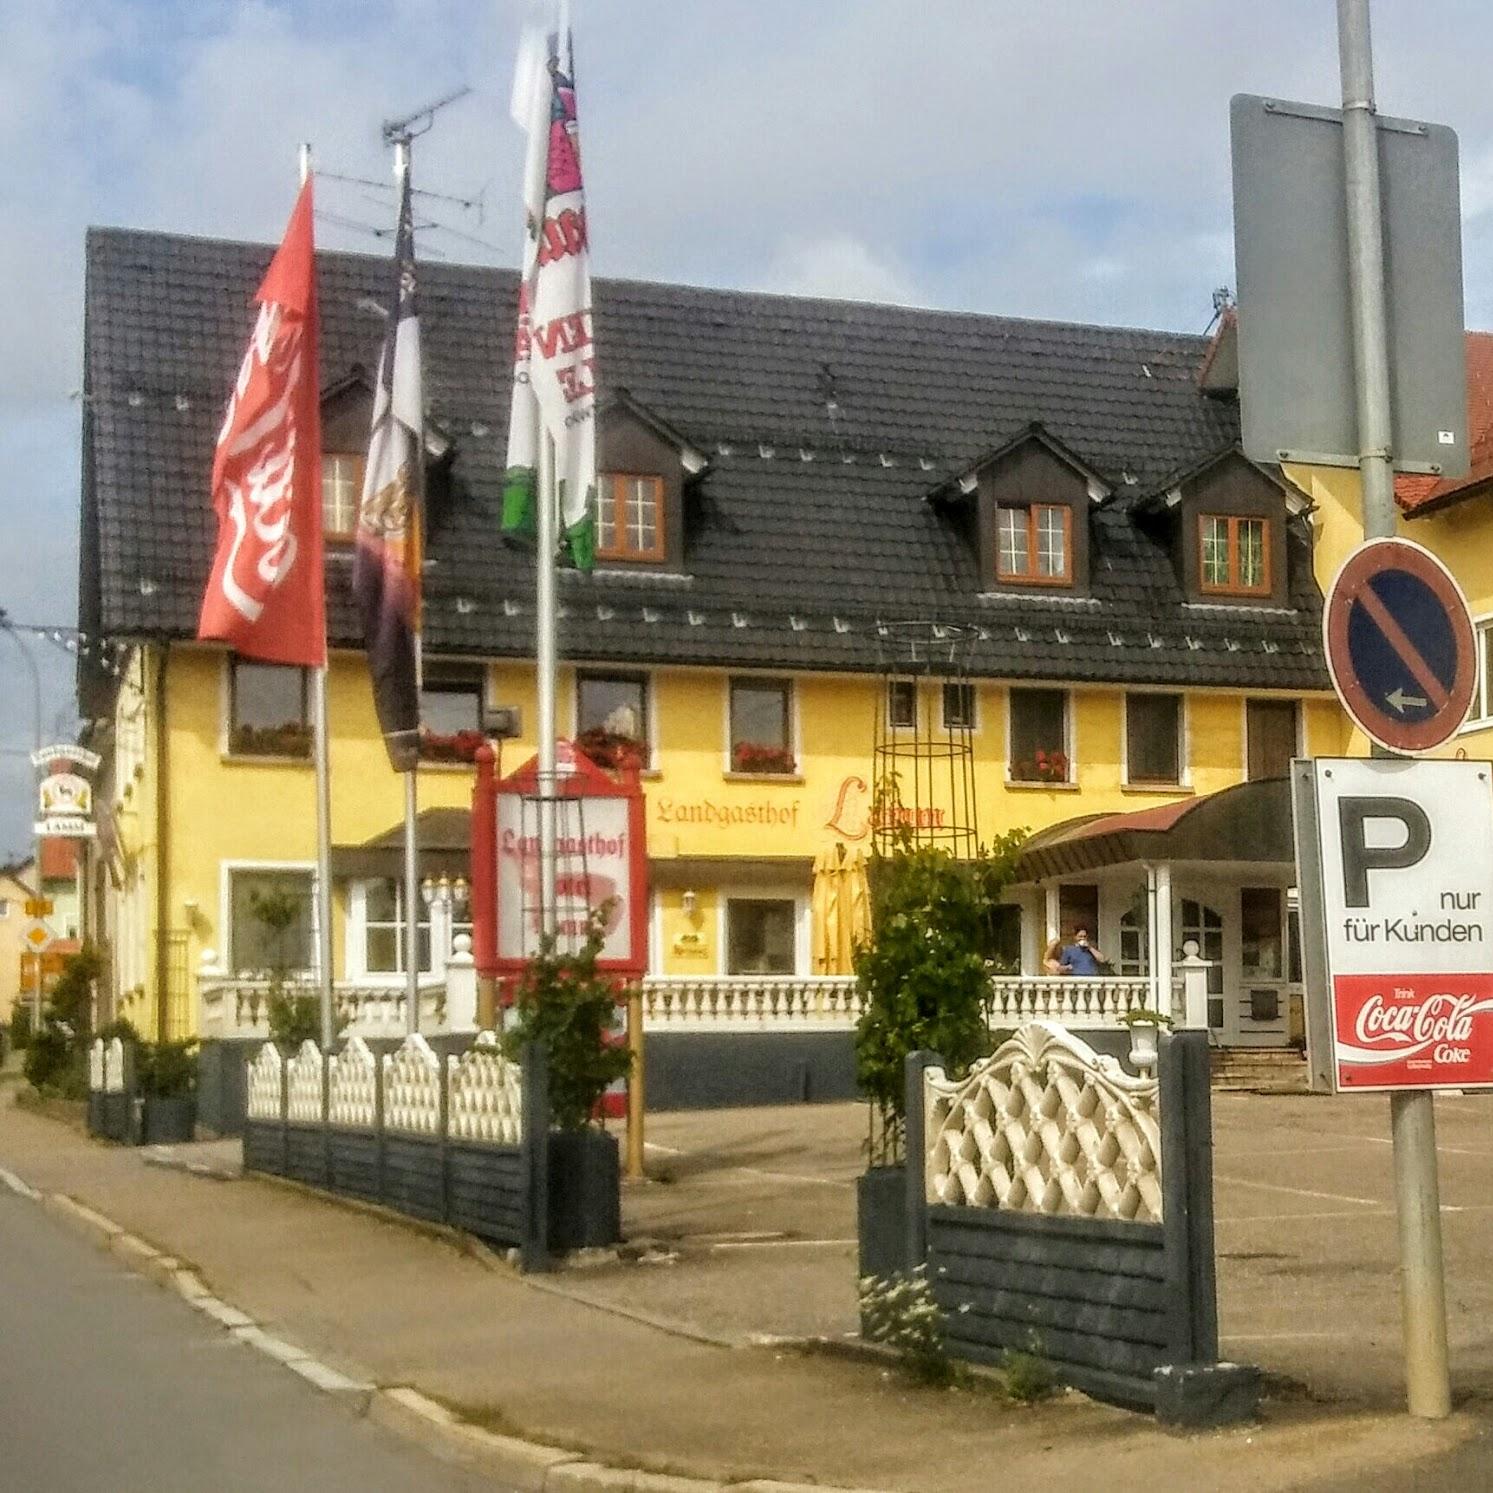 Restaurant "Landgasthof Hotel Lamm" in Laichingen